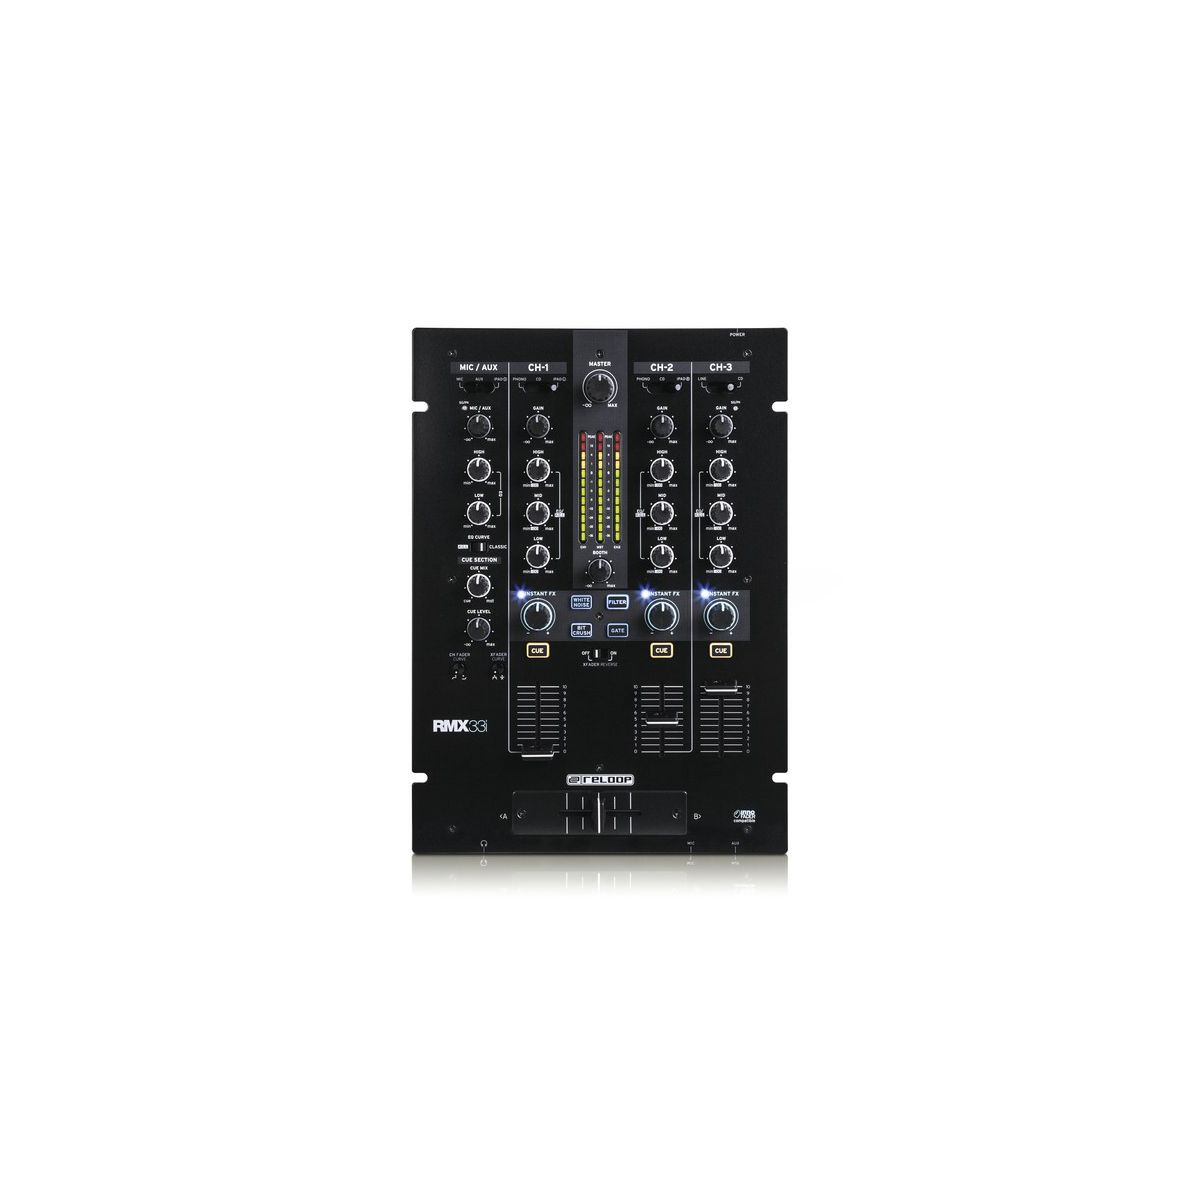 Tables de mixage DJ - Reloop - RMX33i